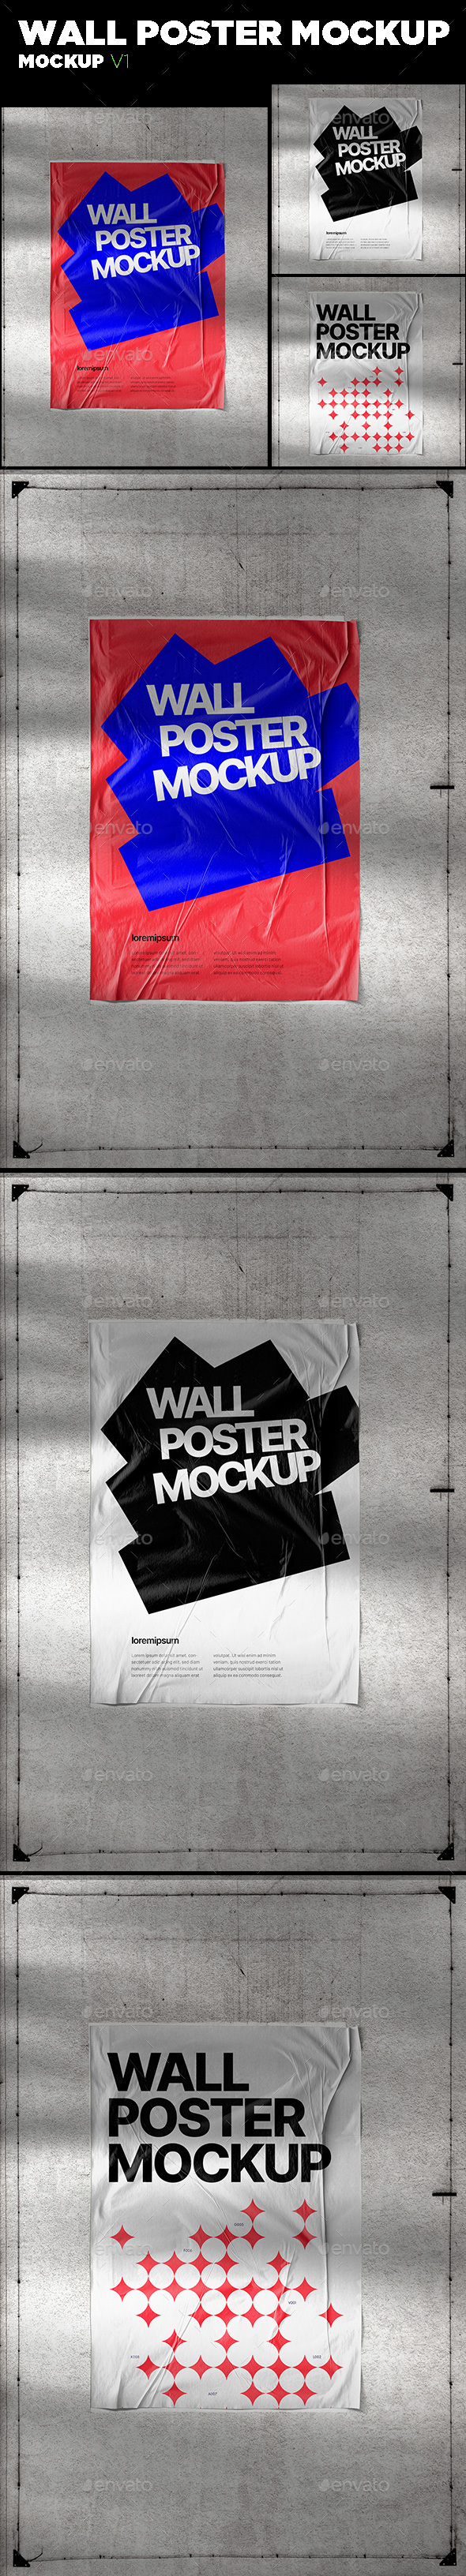 [DOWNLOAD]Wall Poster Mockup V1